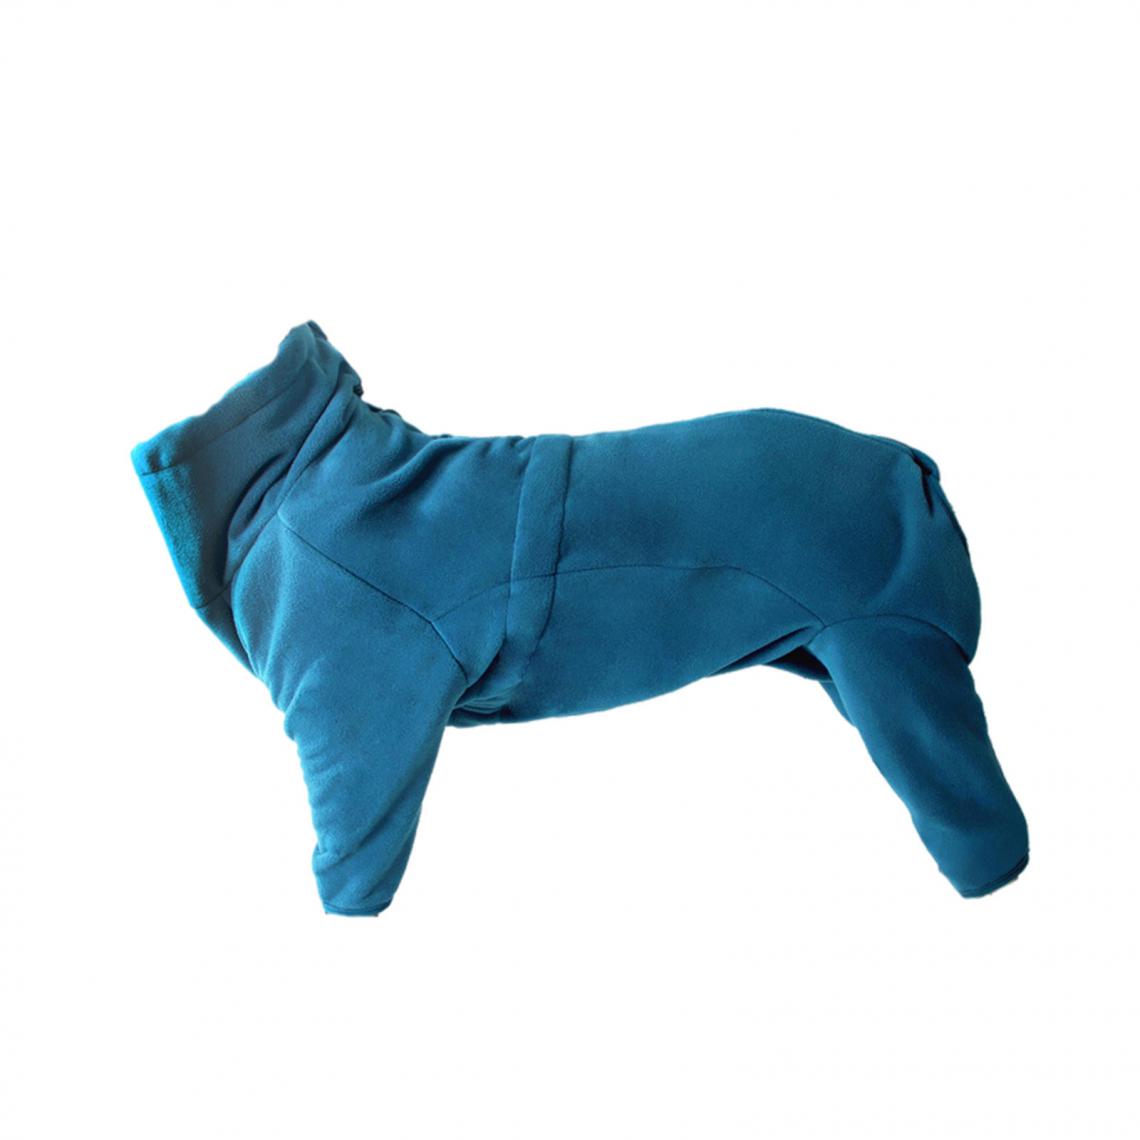 marque generique - Manteaux de chiens - Vêtement pour chien